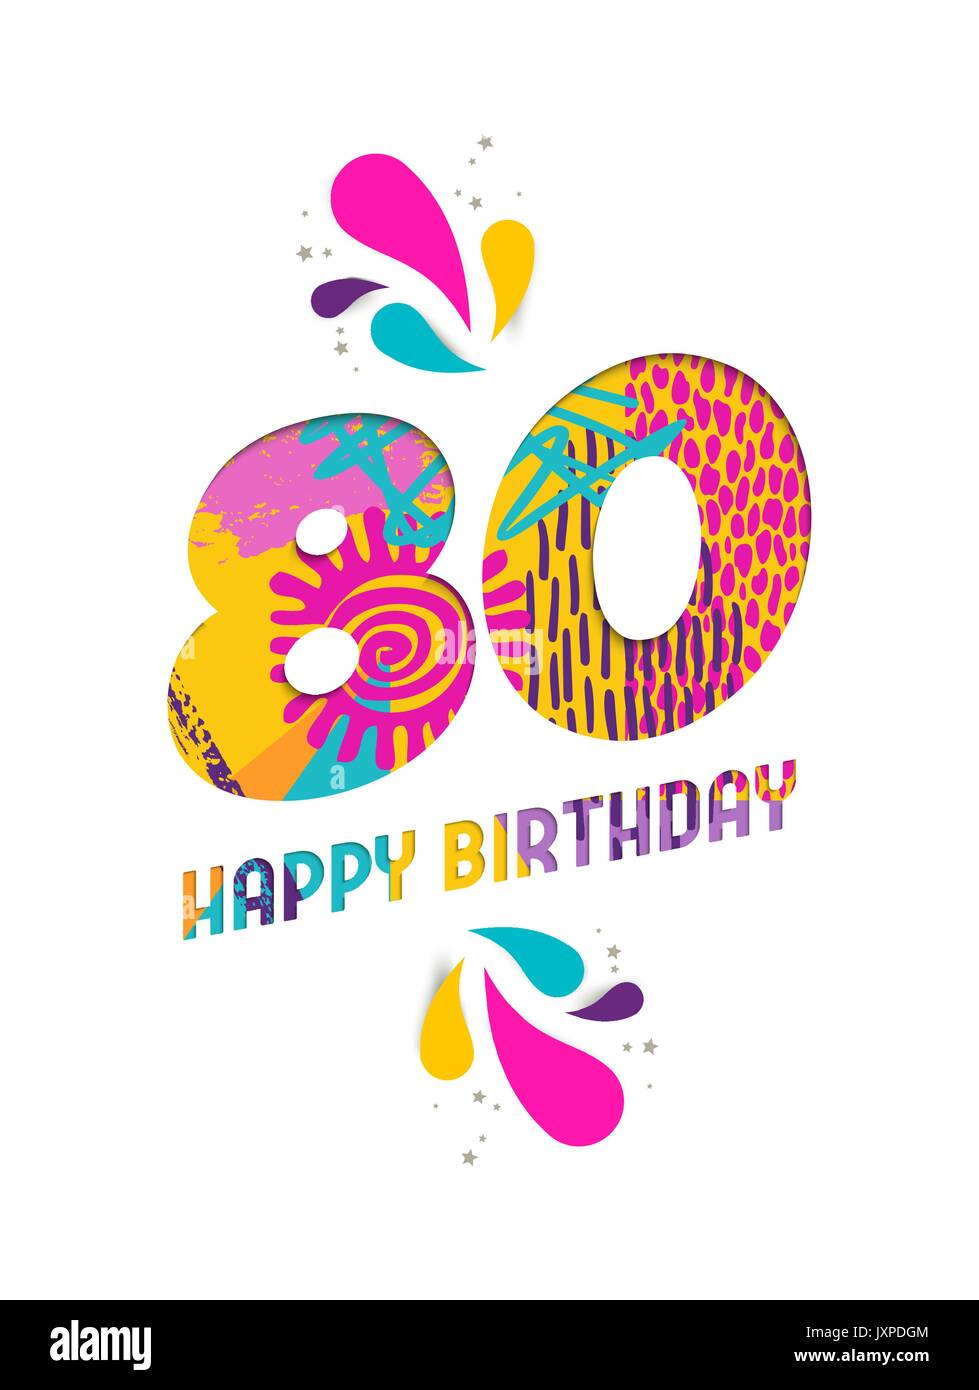 Joyeux anniversaire 80 80 ans, amusant papier coupé numéro et le texte de l'étiquette avec colourful abstract art dessinés à la main, idéal pour accueillir un événement spécial, de l'affiche Illustration de Vecteur